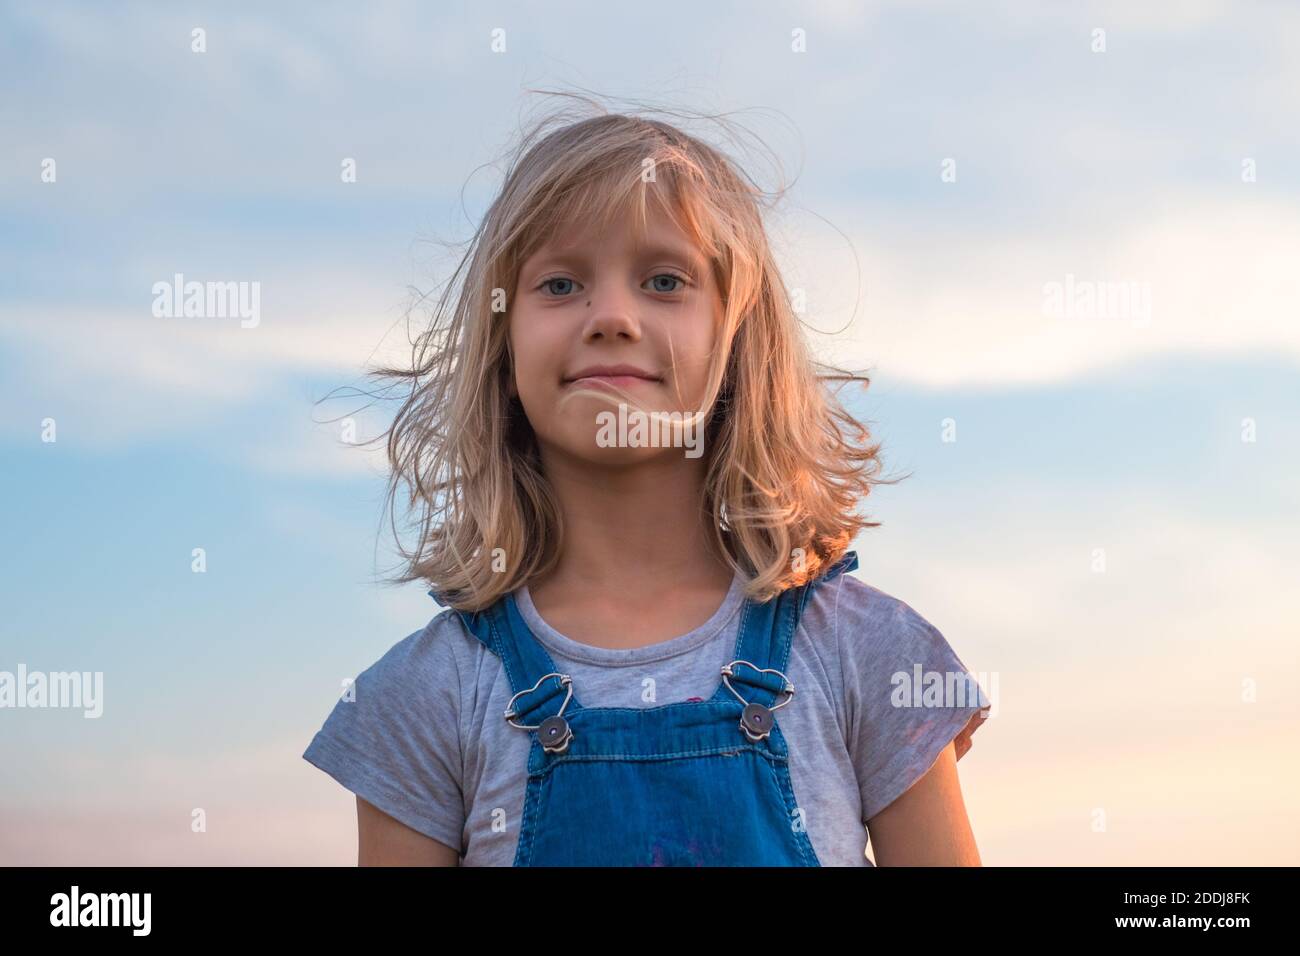 portrait d'une fille avec de grands yeux et des cheveux blonds en développement contre le ciel. Banque D'Images